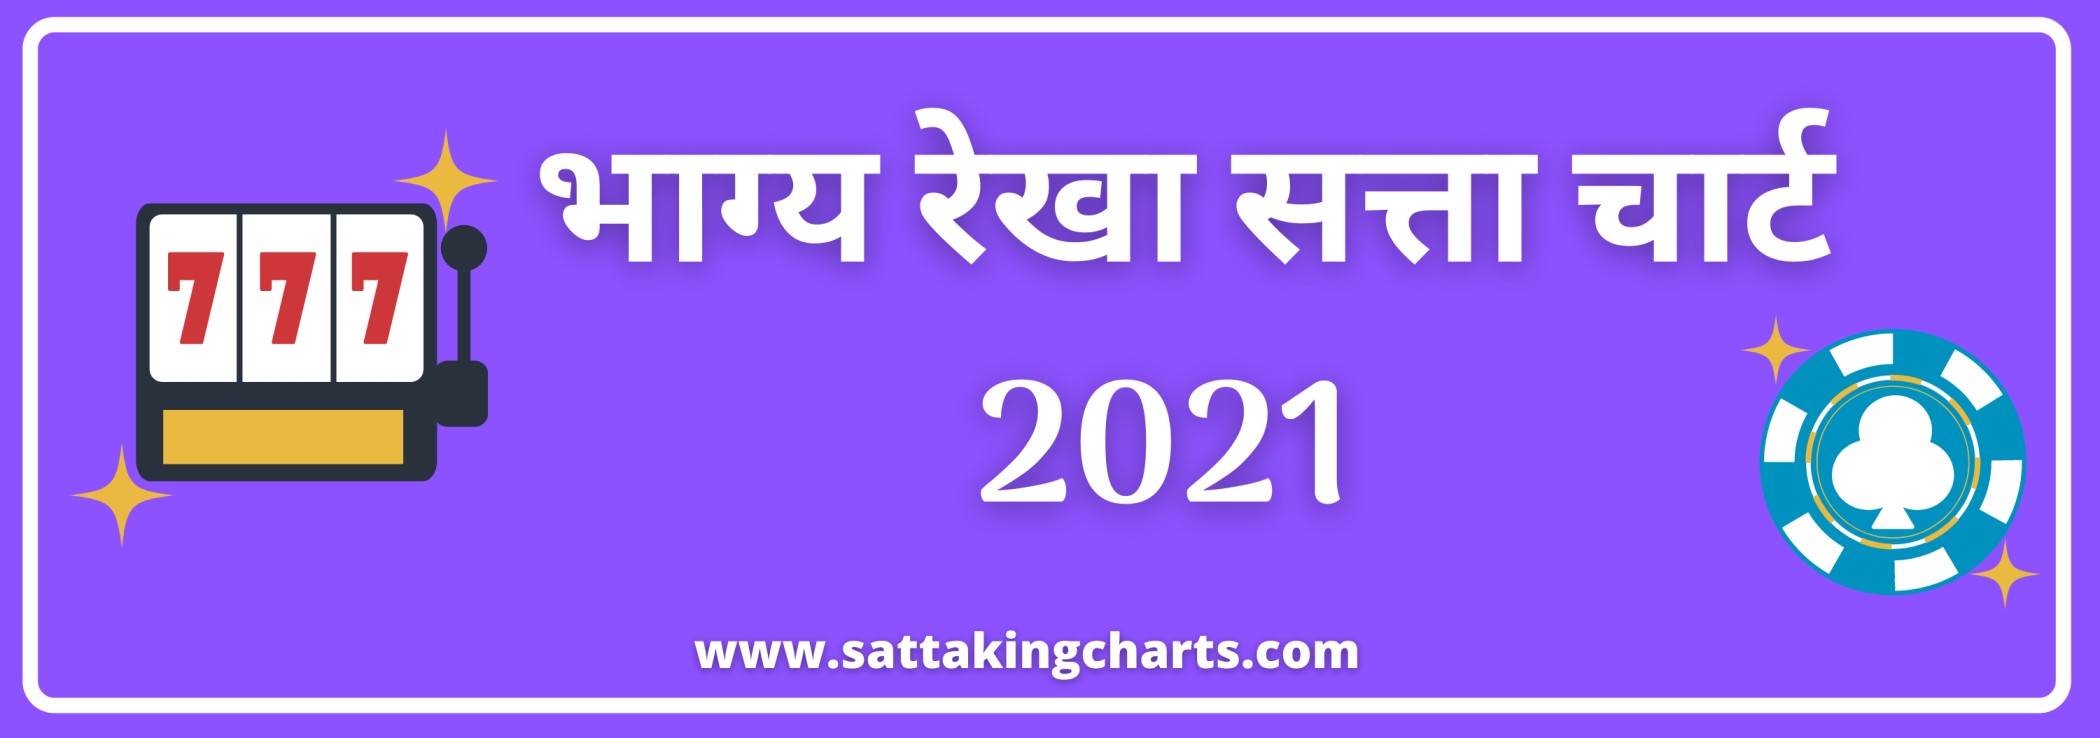 Bhagya Rekha Satta 2021